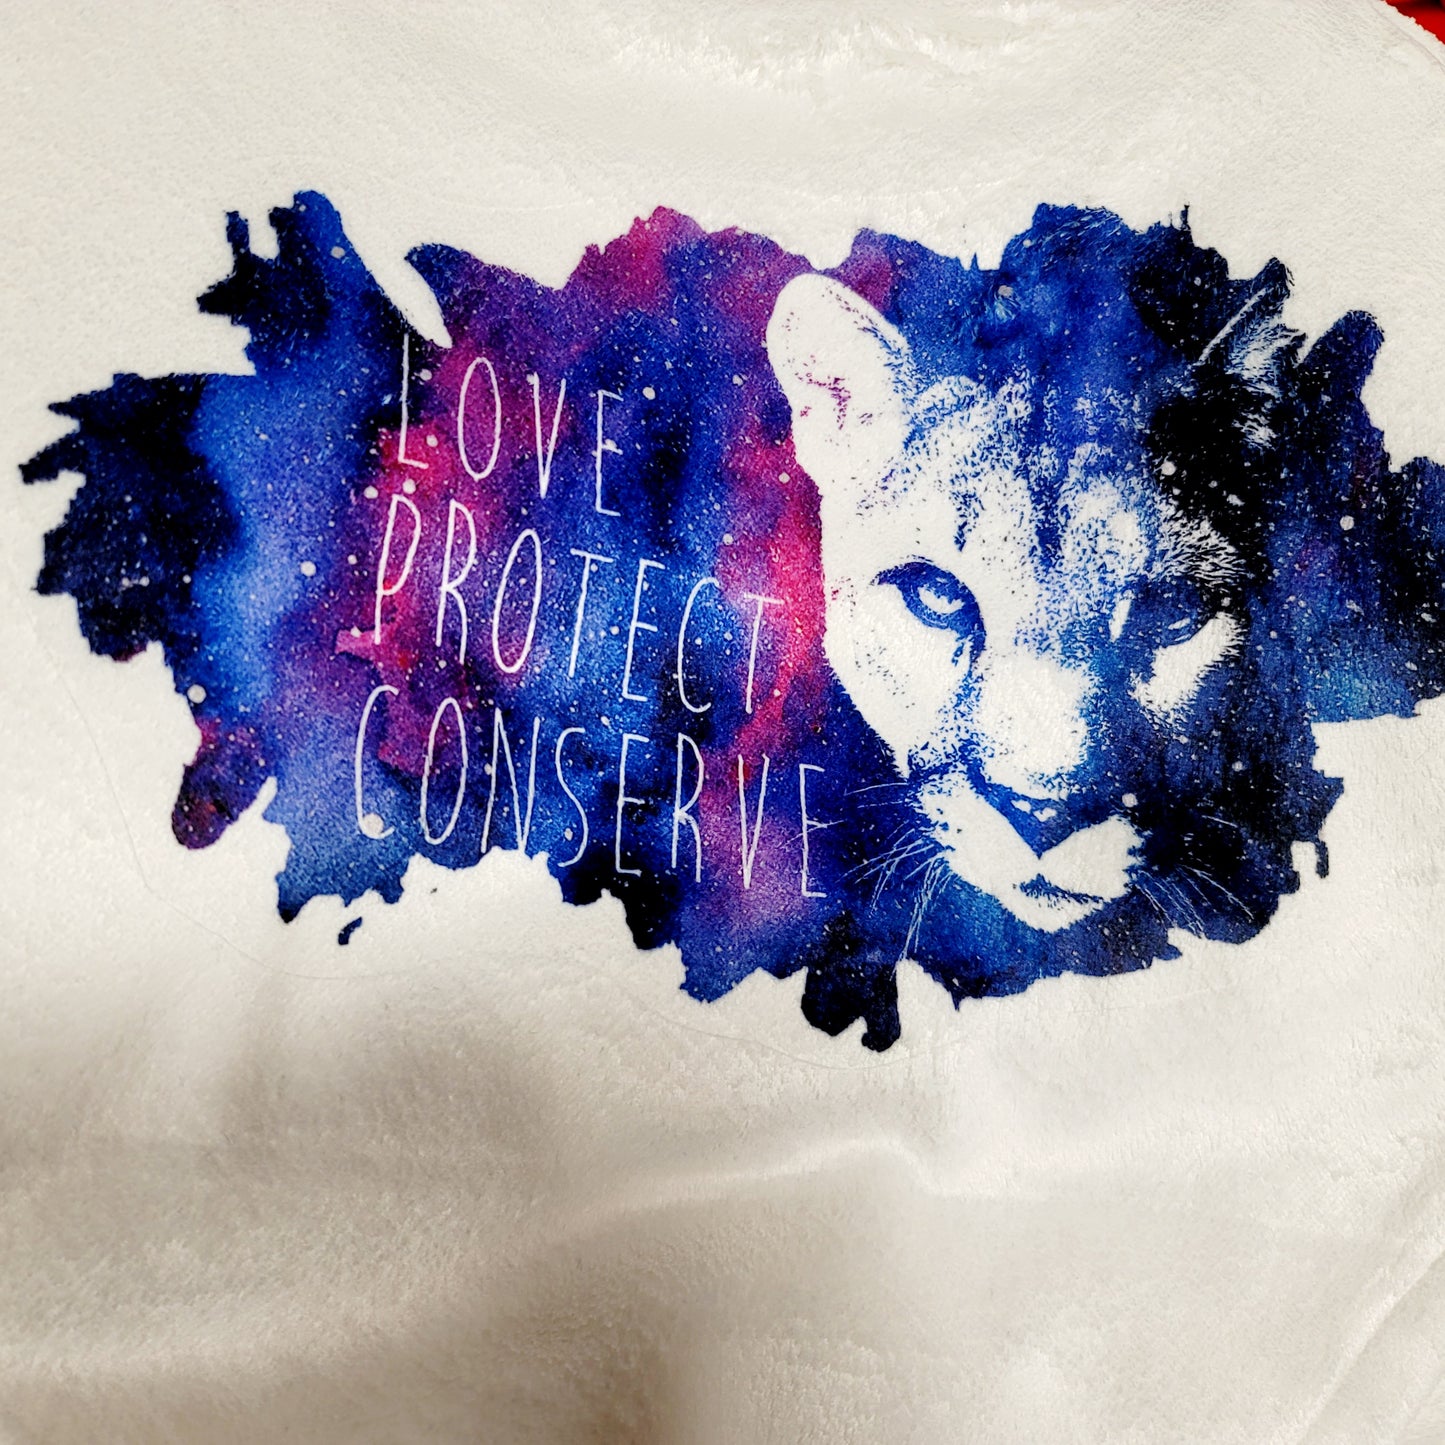 Love Protect Conserve Cougar Face Galaxy Background - Manta ultra felpa - Malvavisco (hecho a pedido) 